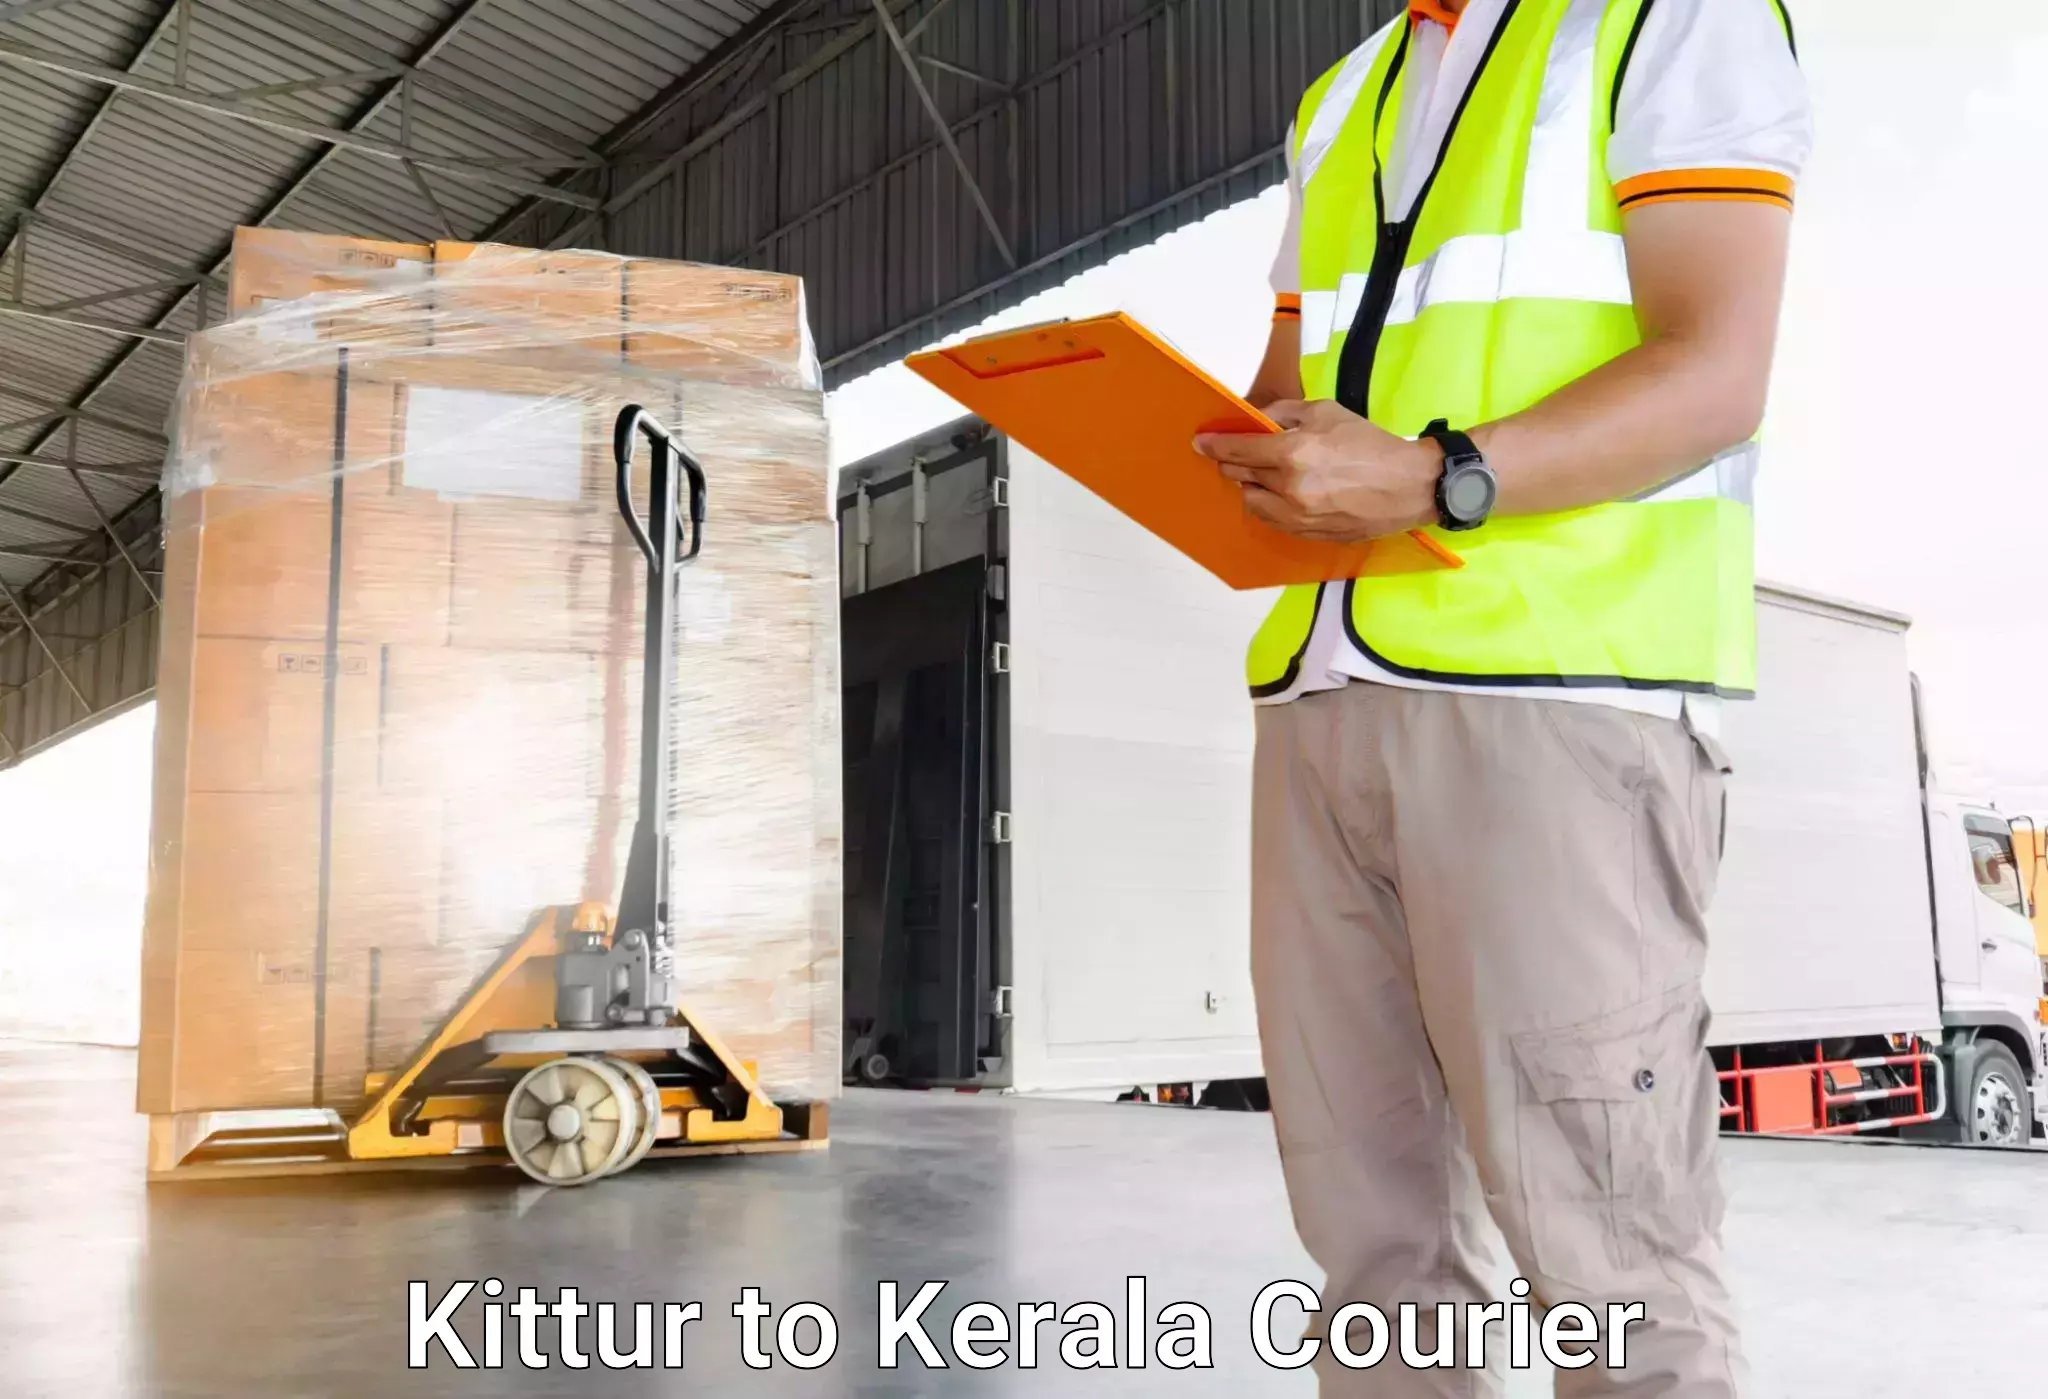 Door-to-door baggage service Kittur to Palai